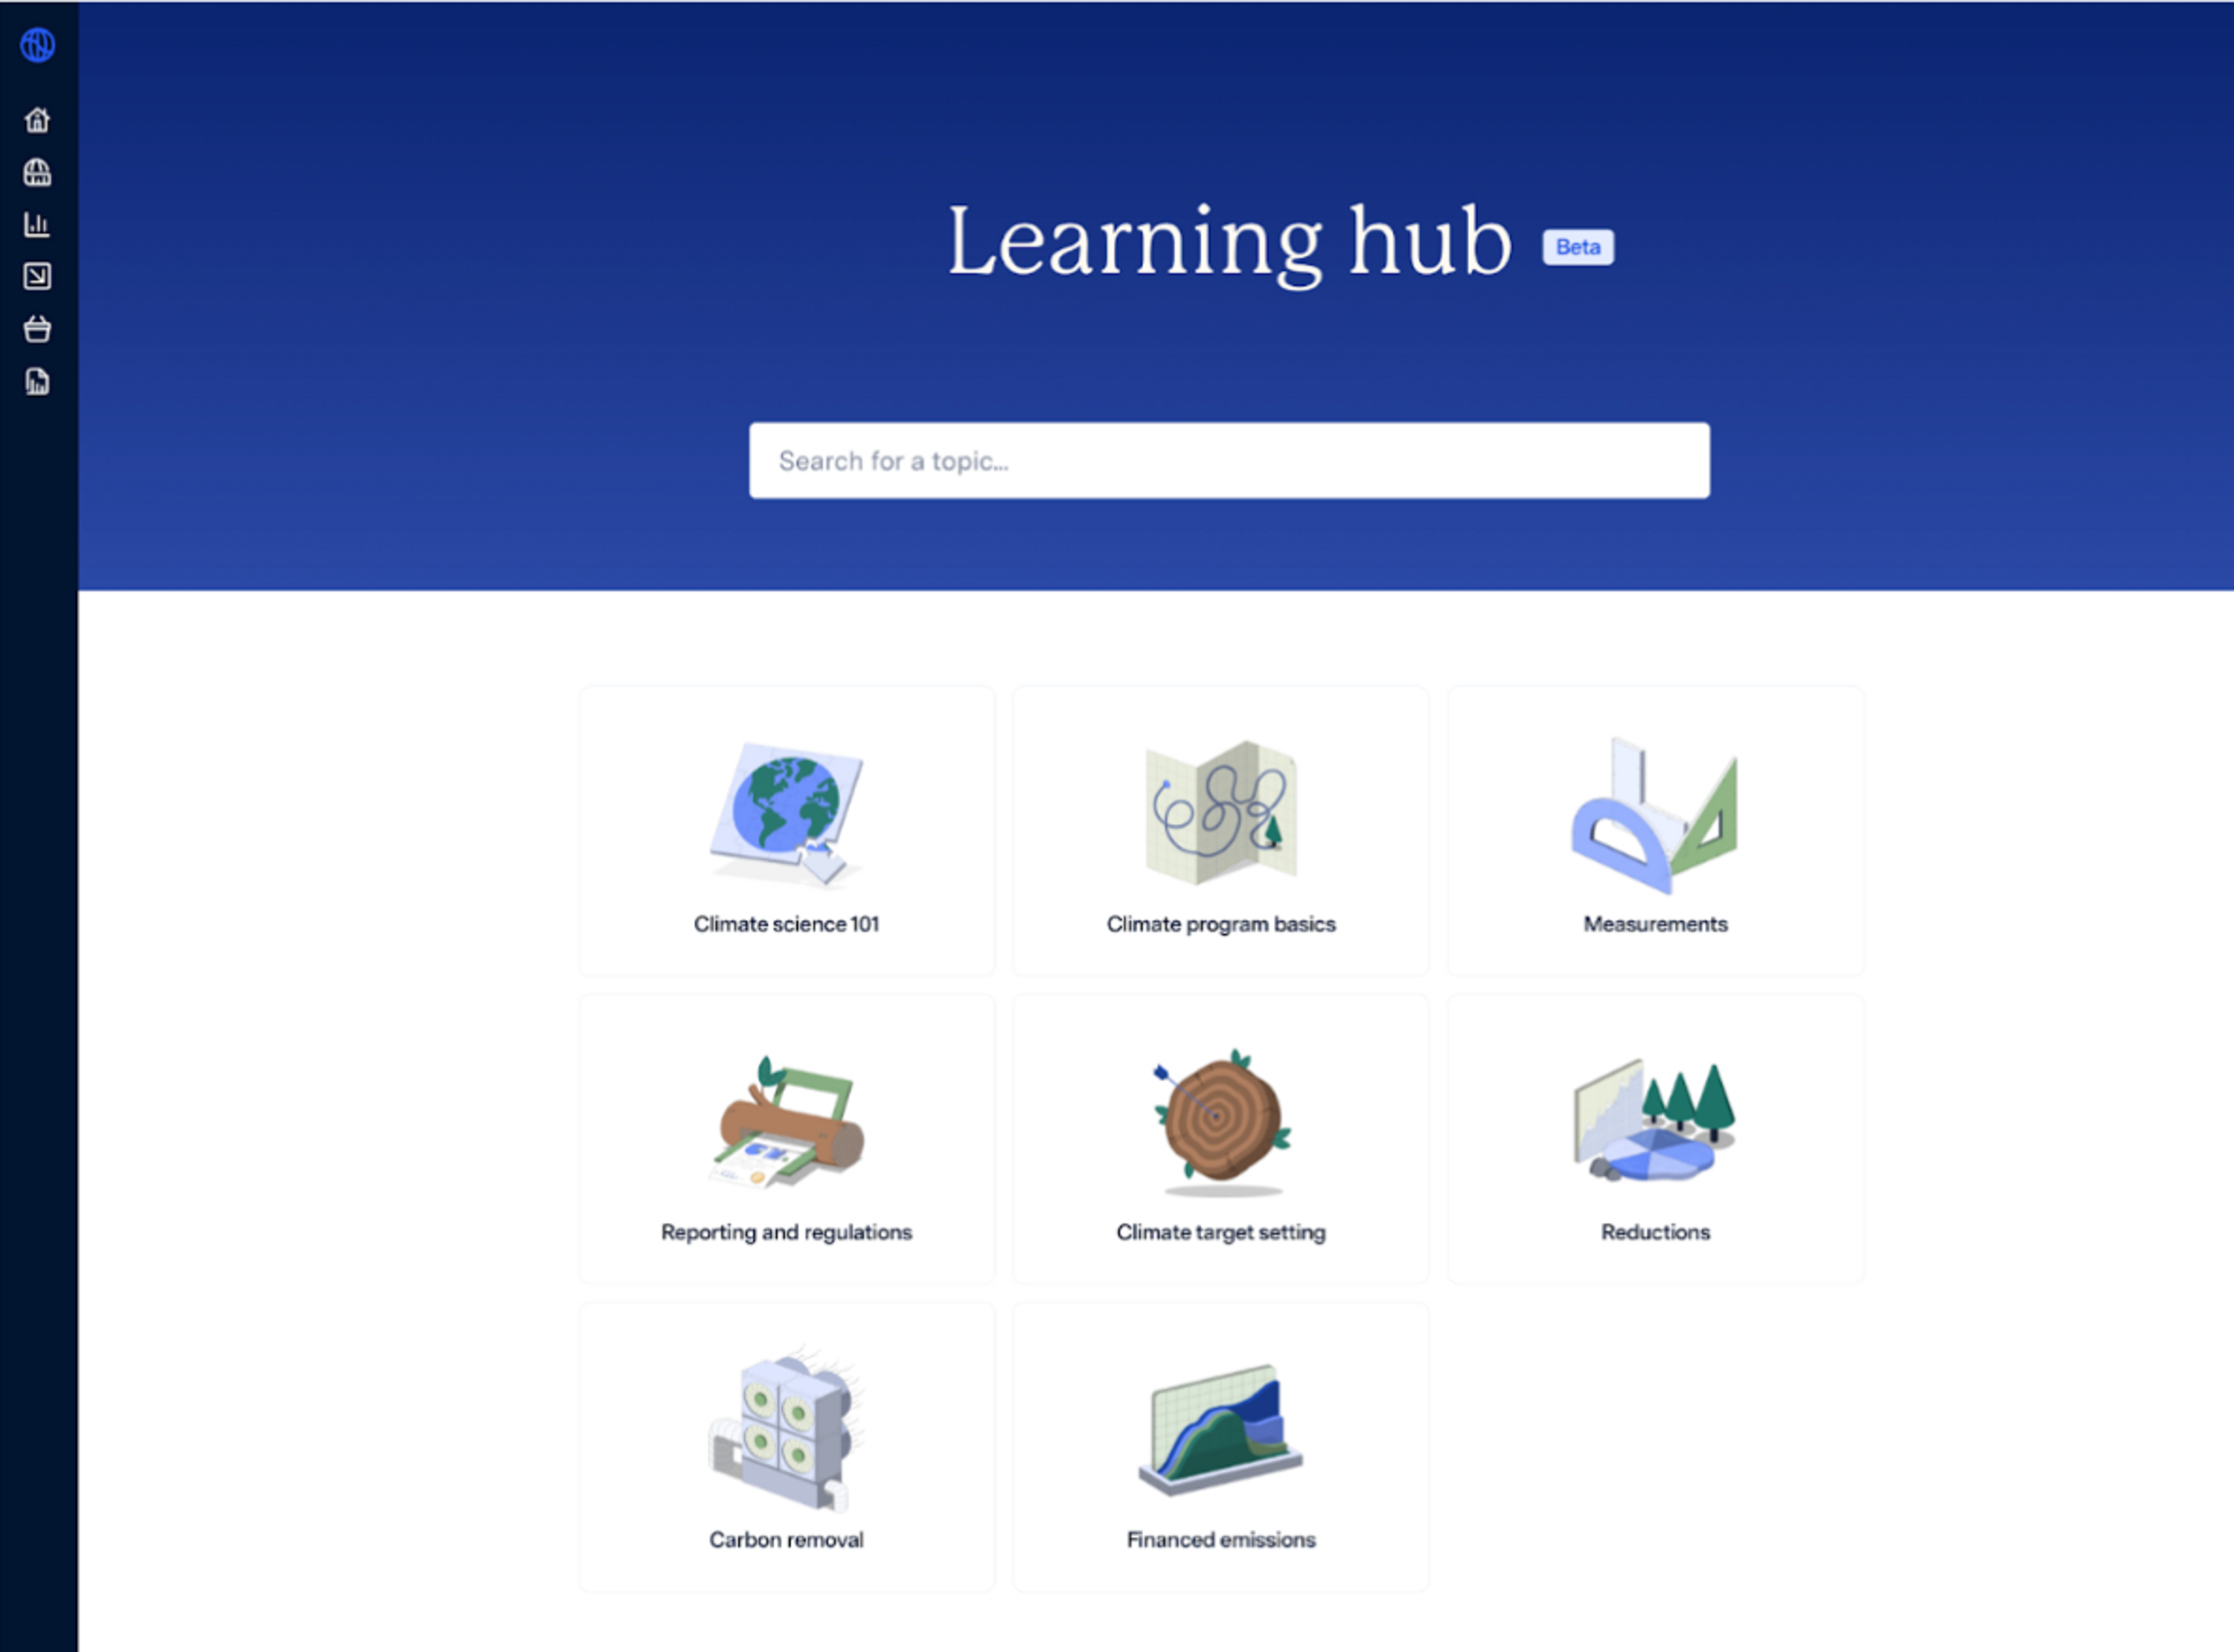 VMware supplier portal learning hub